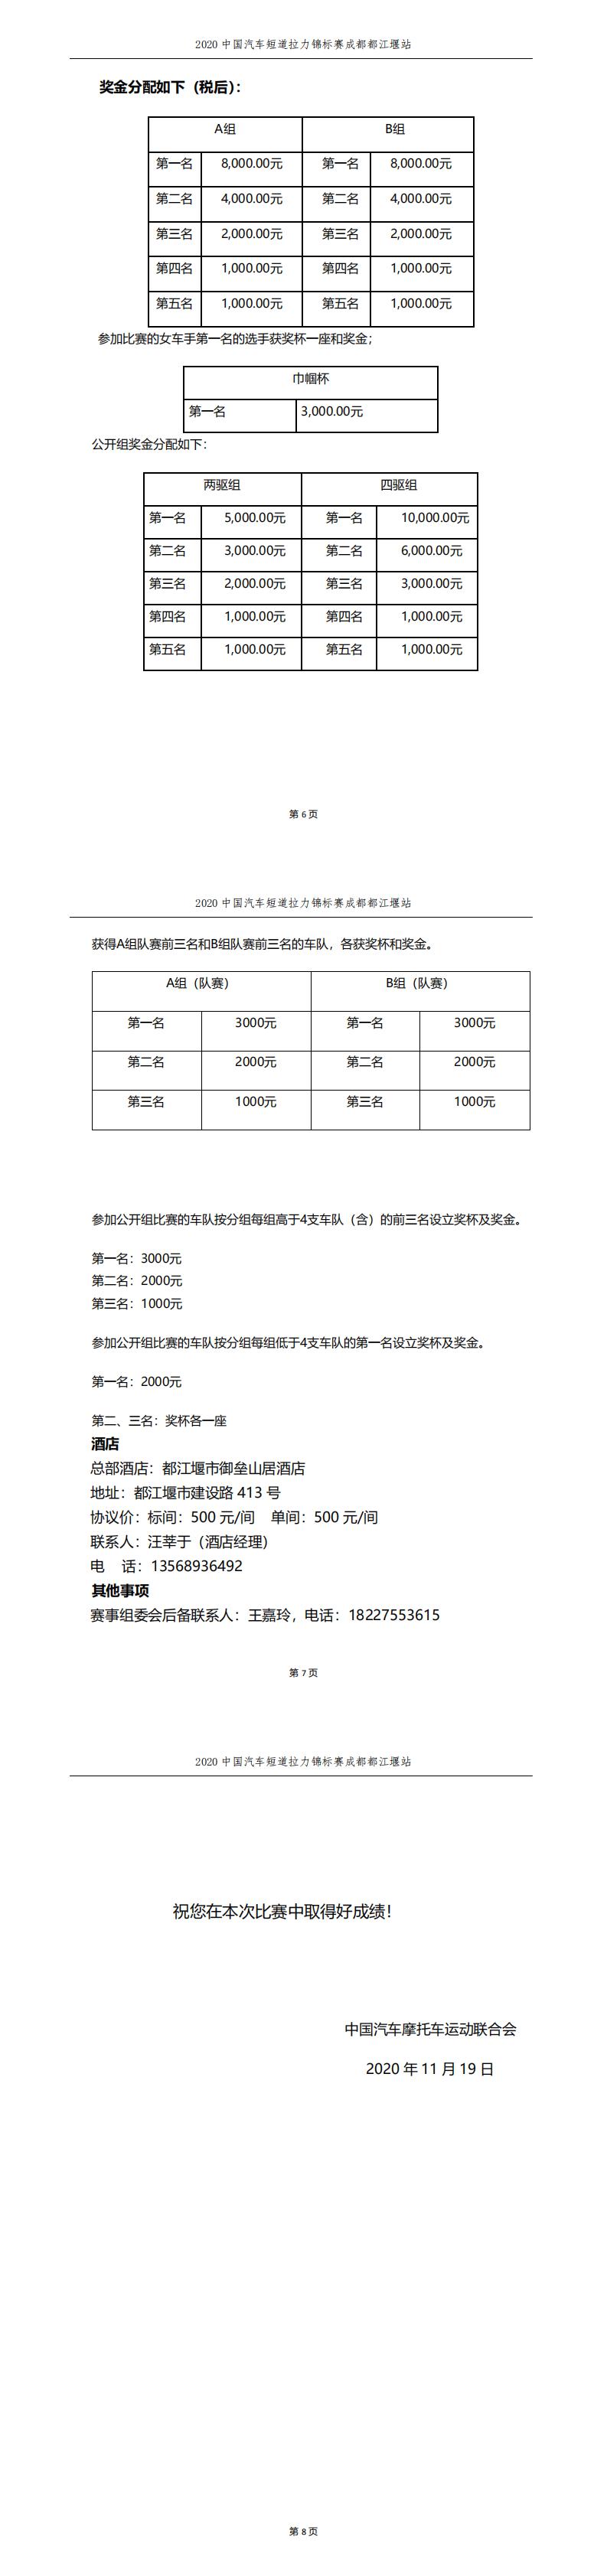 2020 中国汽车短道拉力锦标赛成都都江堰站 参赛指南7-9.jpg